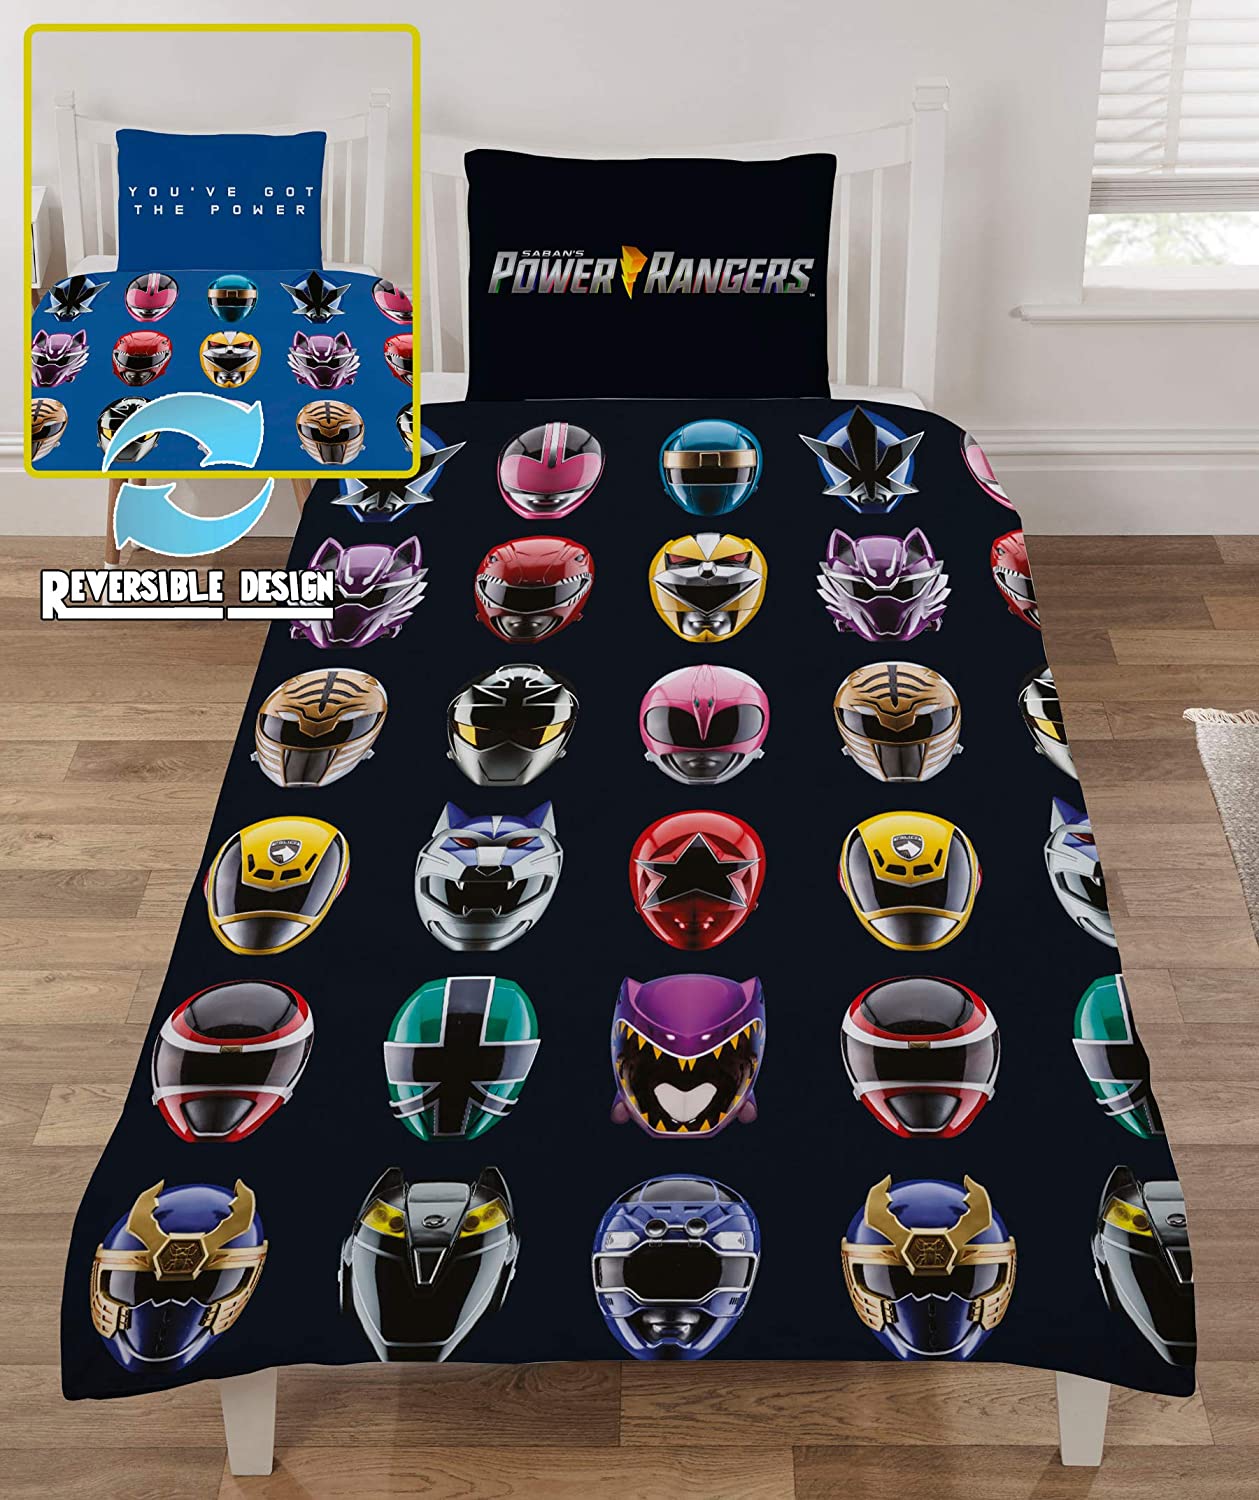 Single Bed Duvet Cover Set Power Rangers Character Bedding Reversible